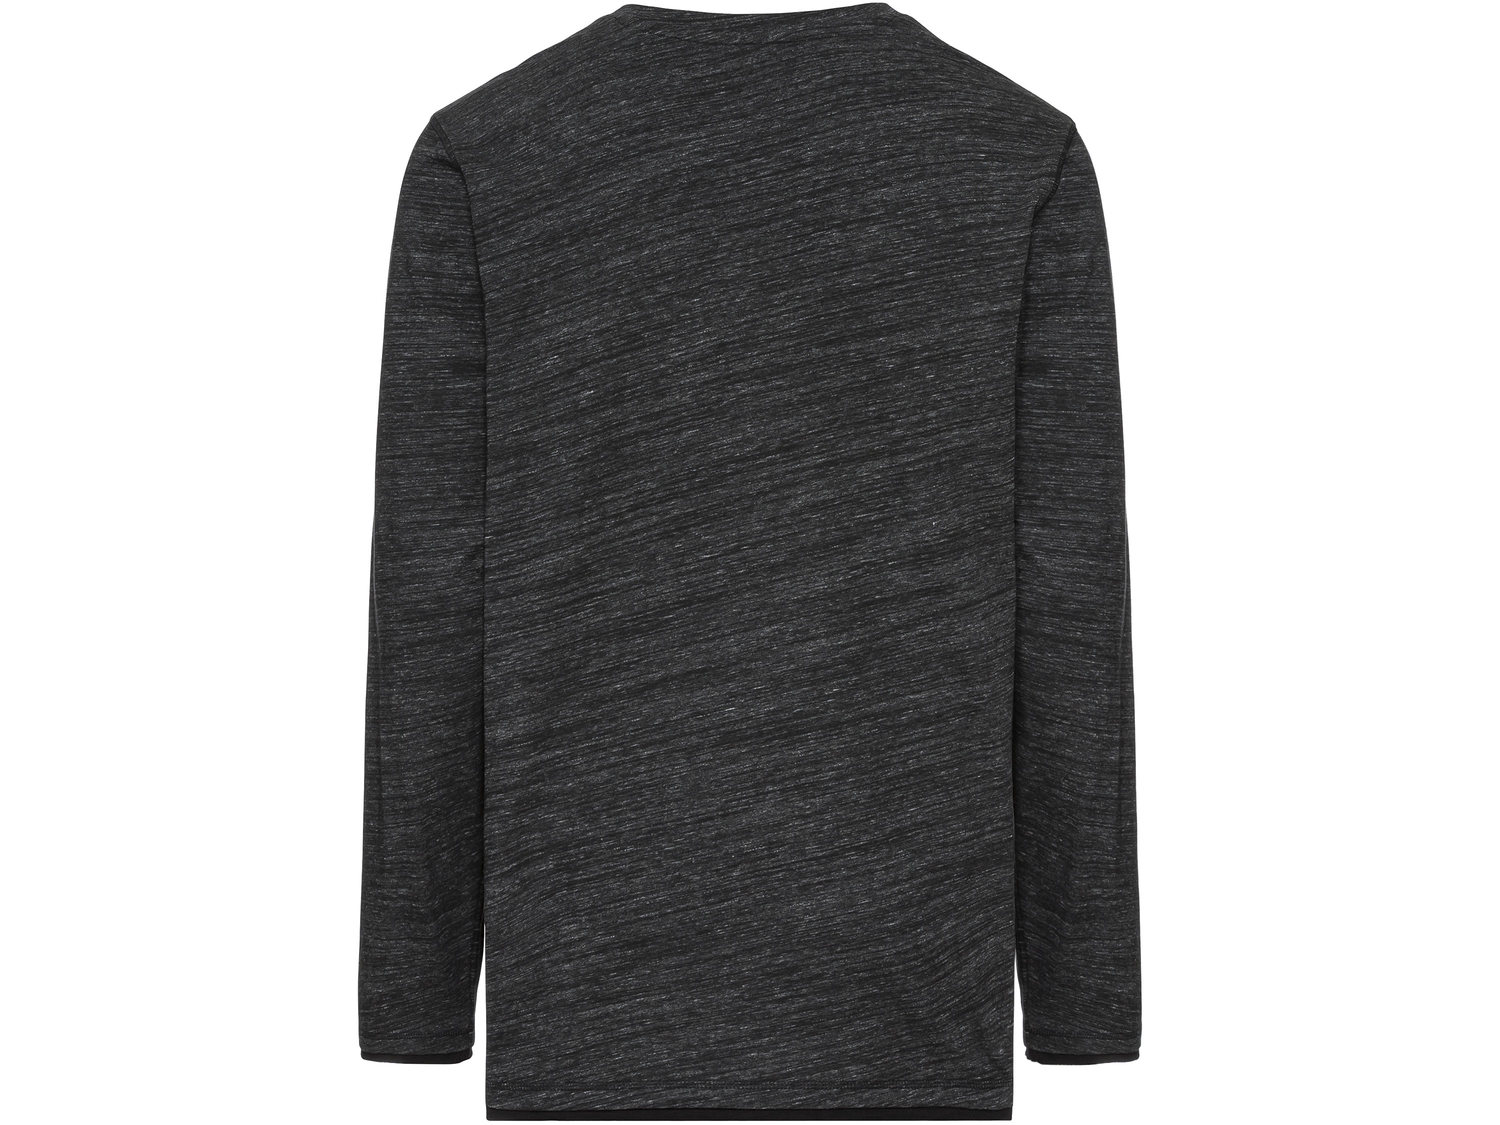 Koszulka Livergy, cena 24,99 PLN 
- wysoka zawartość bawełny
- rozmiary: XL-4XL
- ...